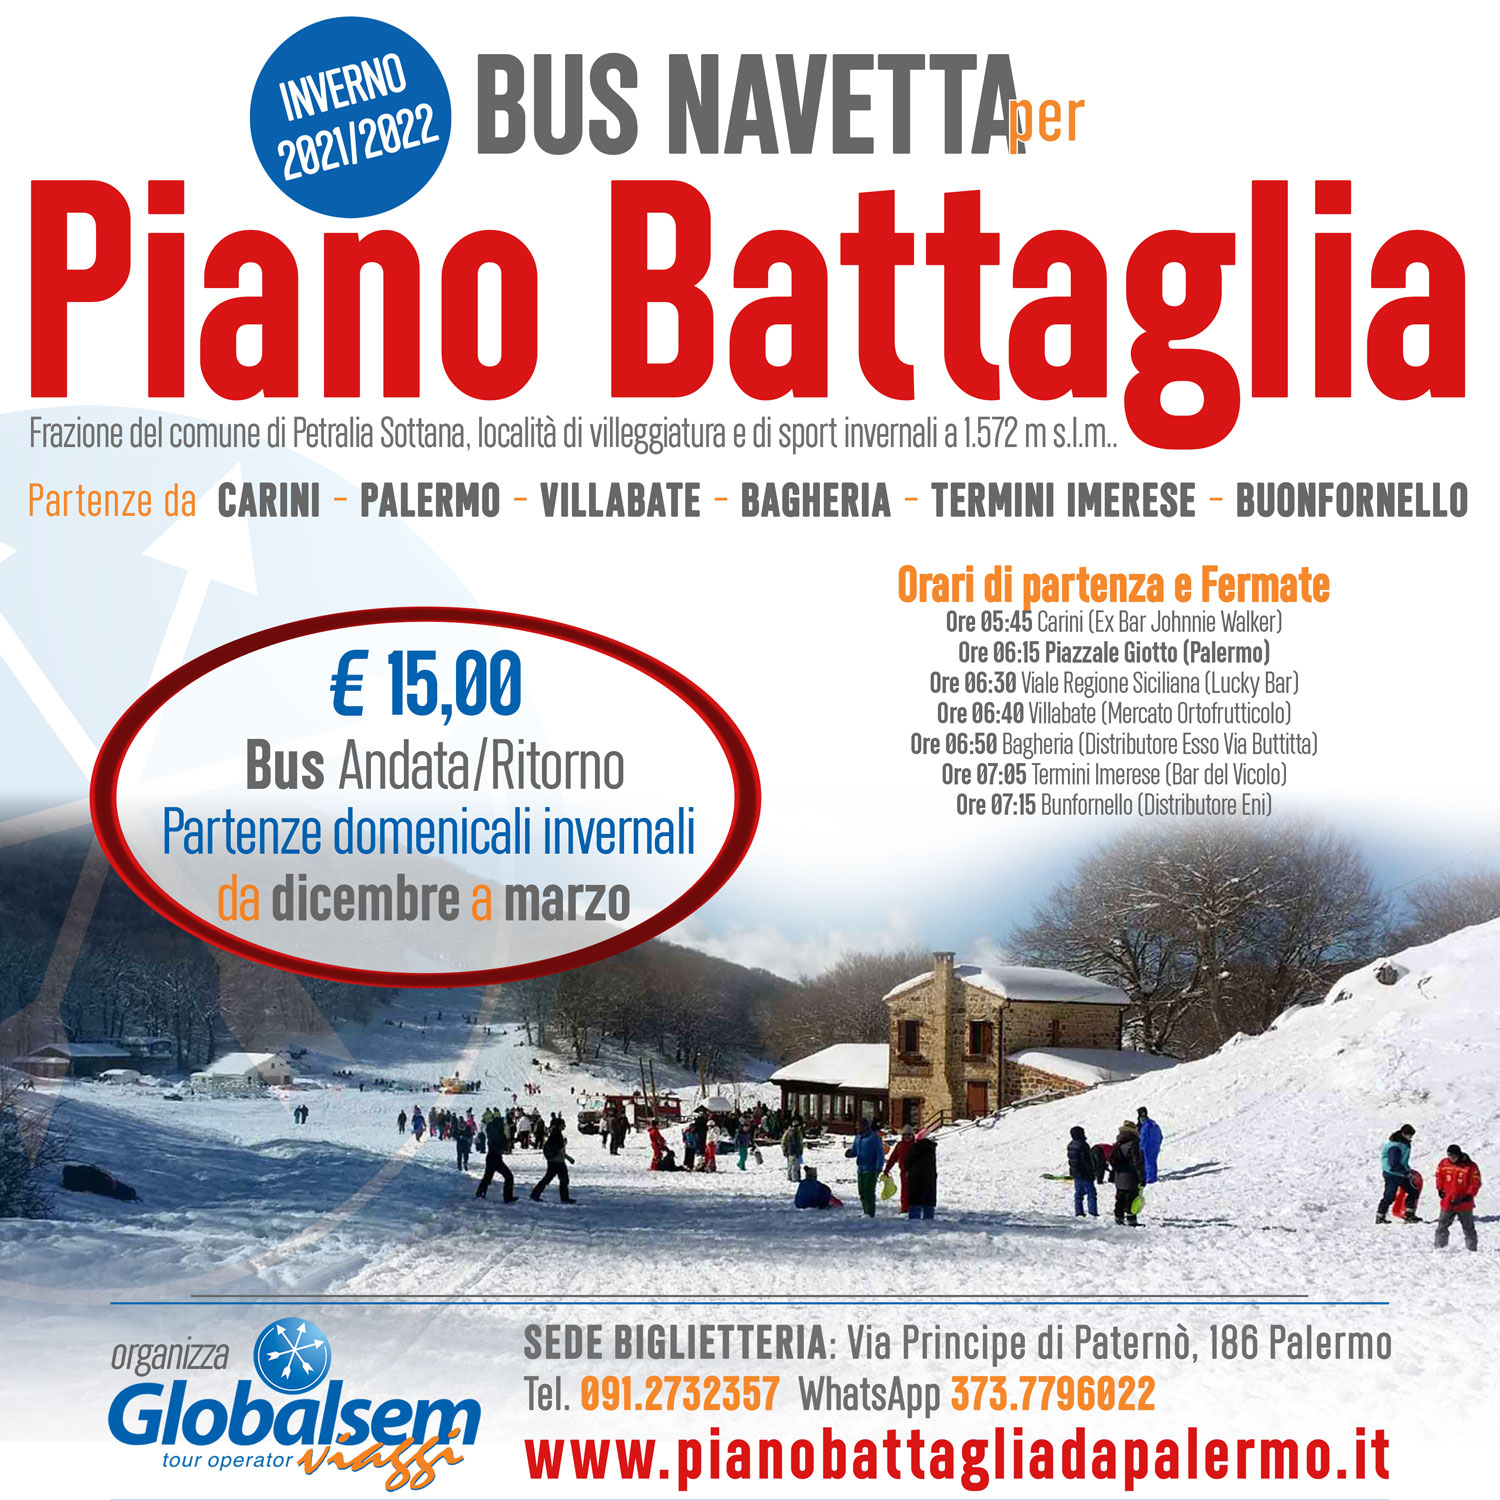 Servizio BUS NAVETTA per PIANO BATTAGLIA da PALERMO - Offerta INVERNO 2021/2022